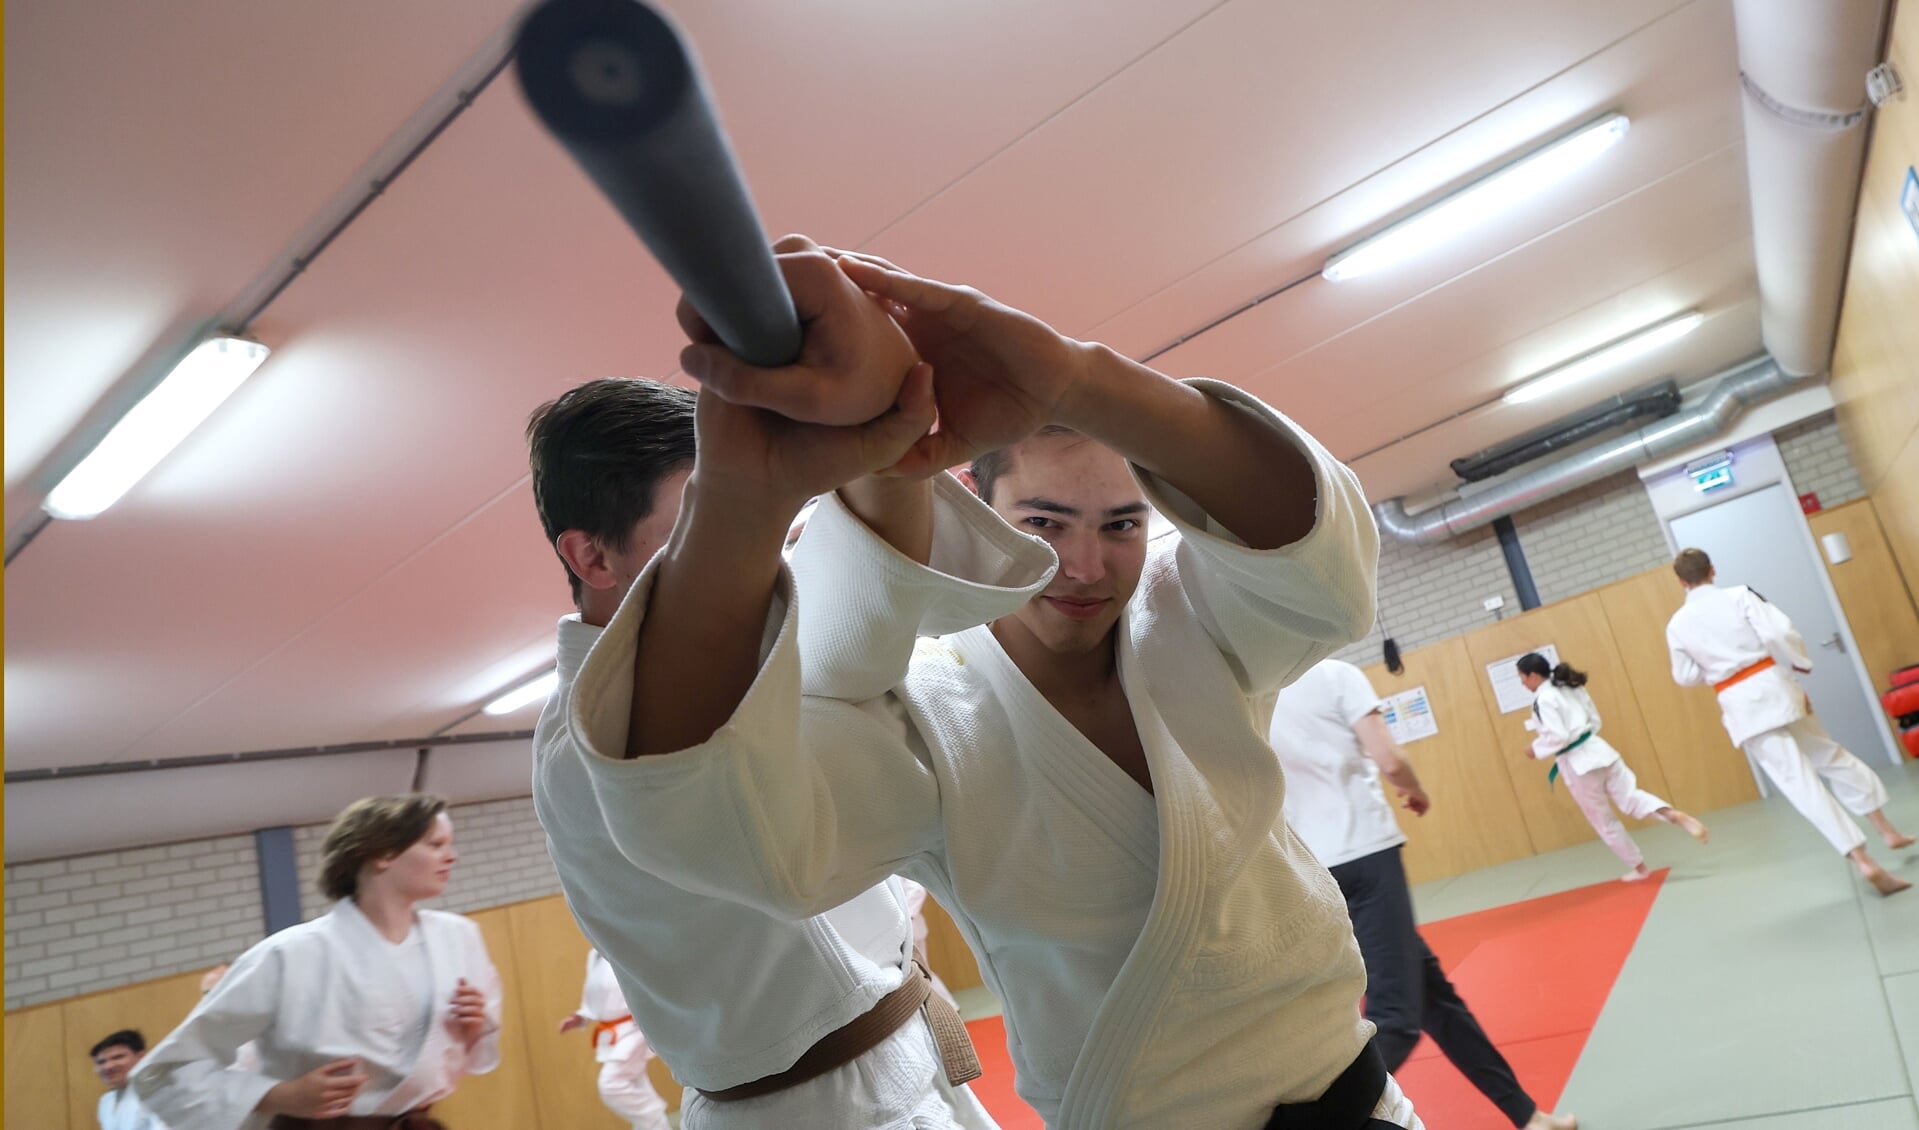 Judo en Jiujitsuvereniging Shizen Hontai gaat op 9 juli 24 uur lesgeven om geld op te halen voor de Stichting ALS Nederland. FOTO: Bert Jansen.